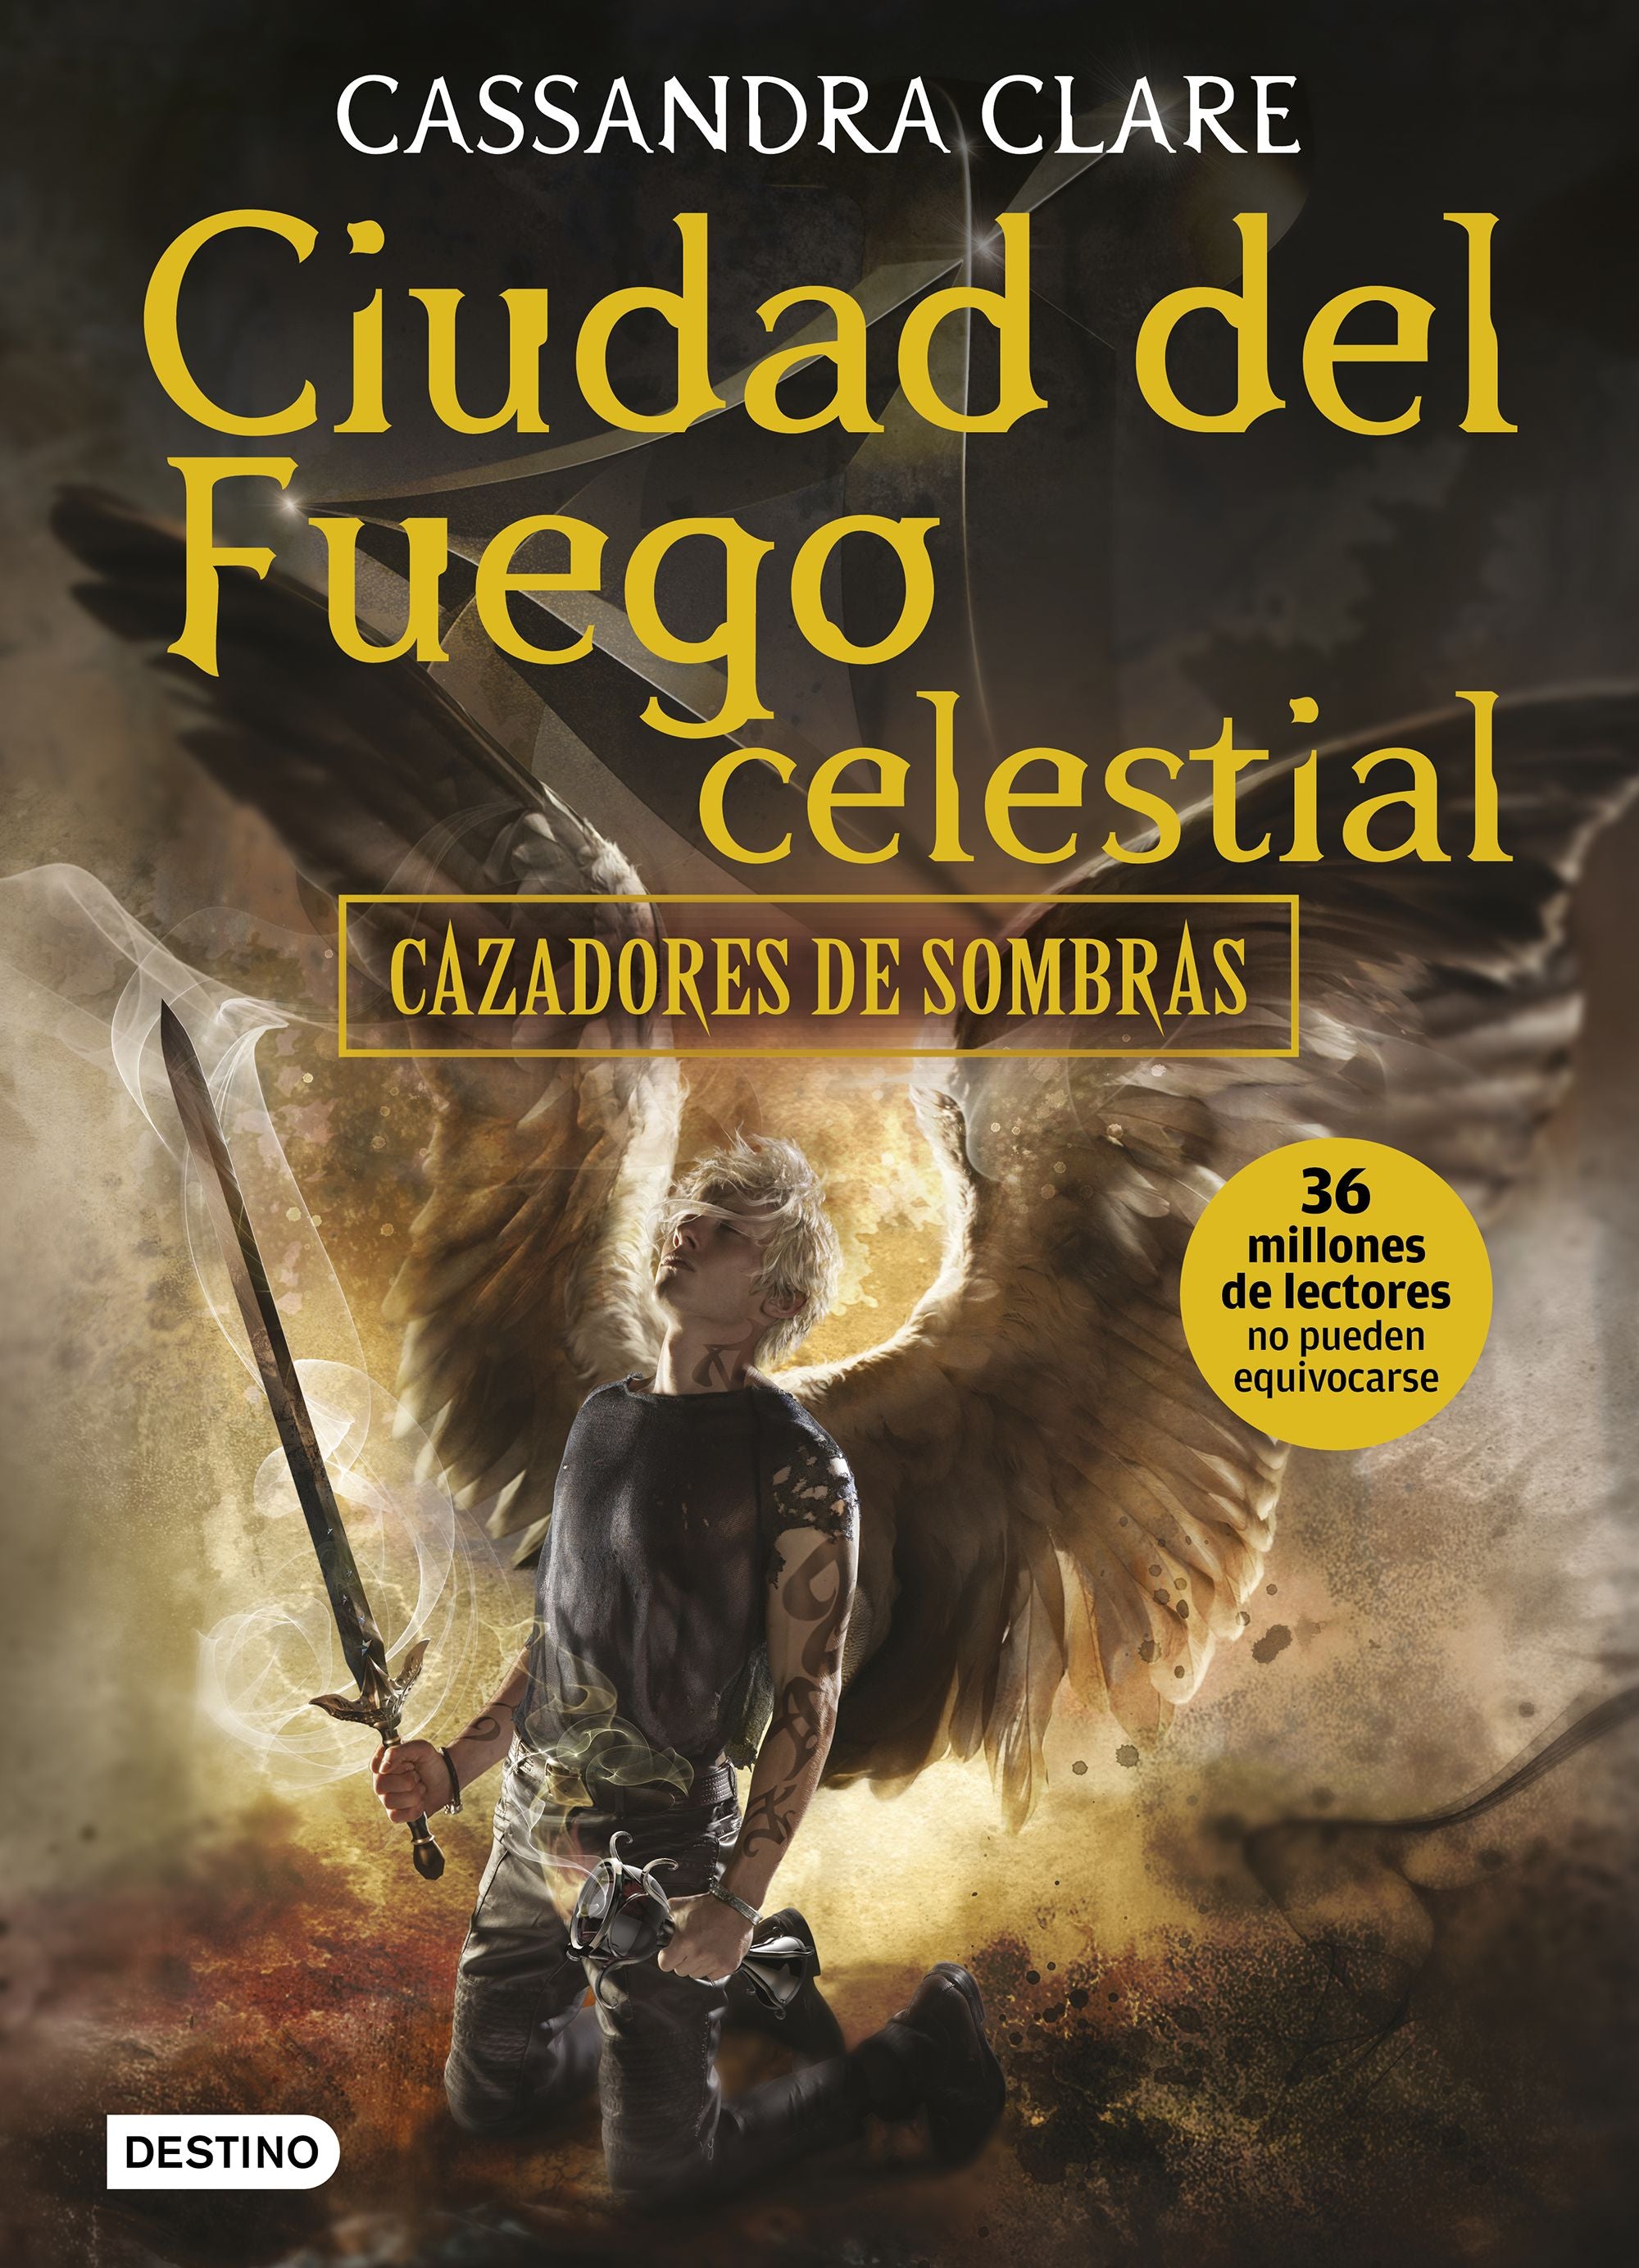 Libro Cassandra Clare - Ciudad del fuego celestial